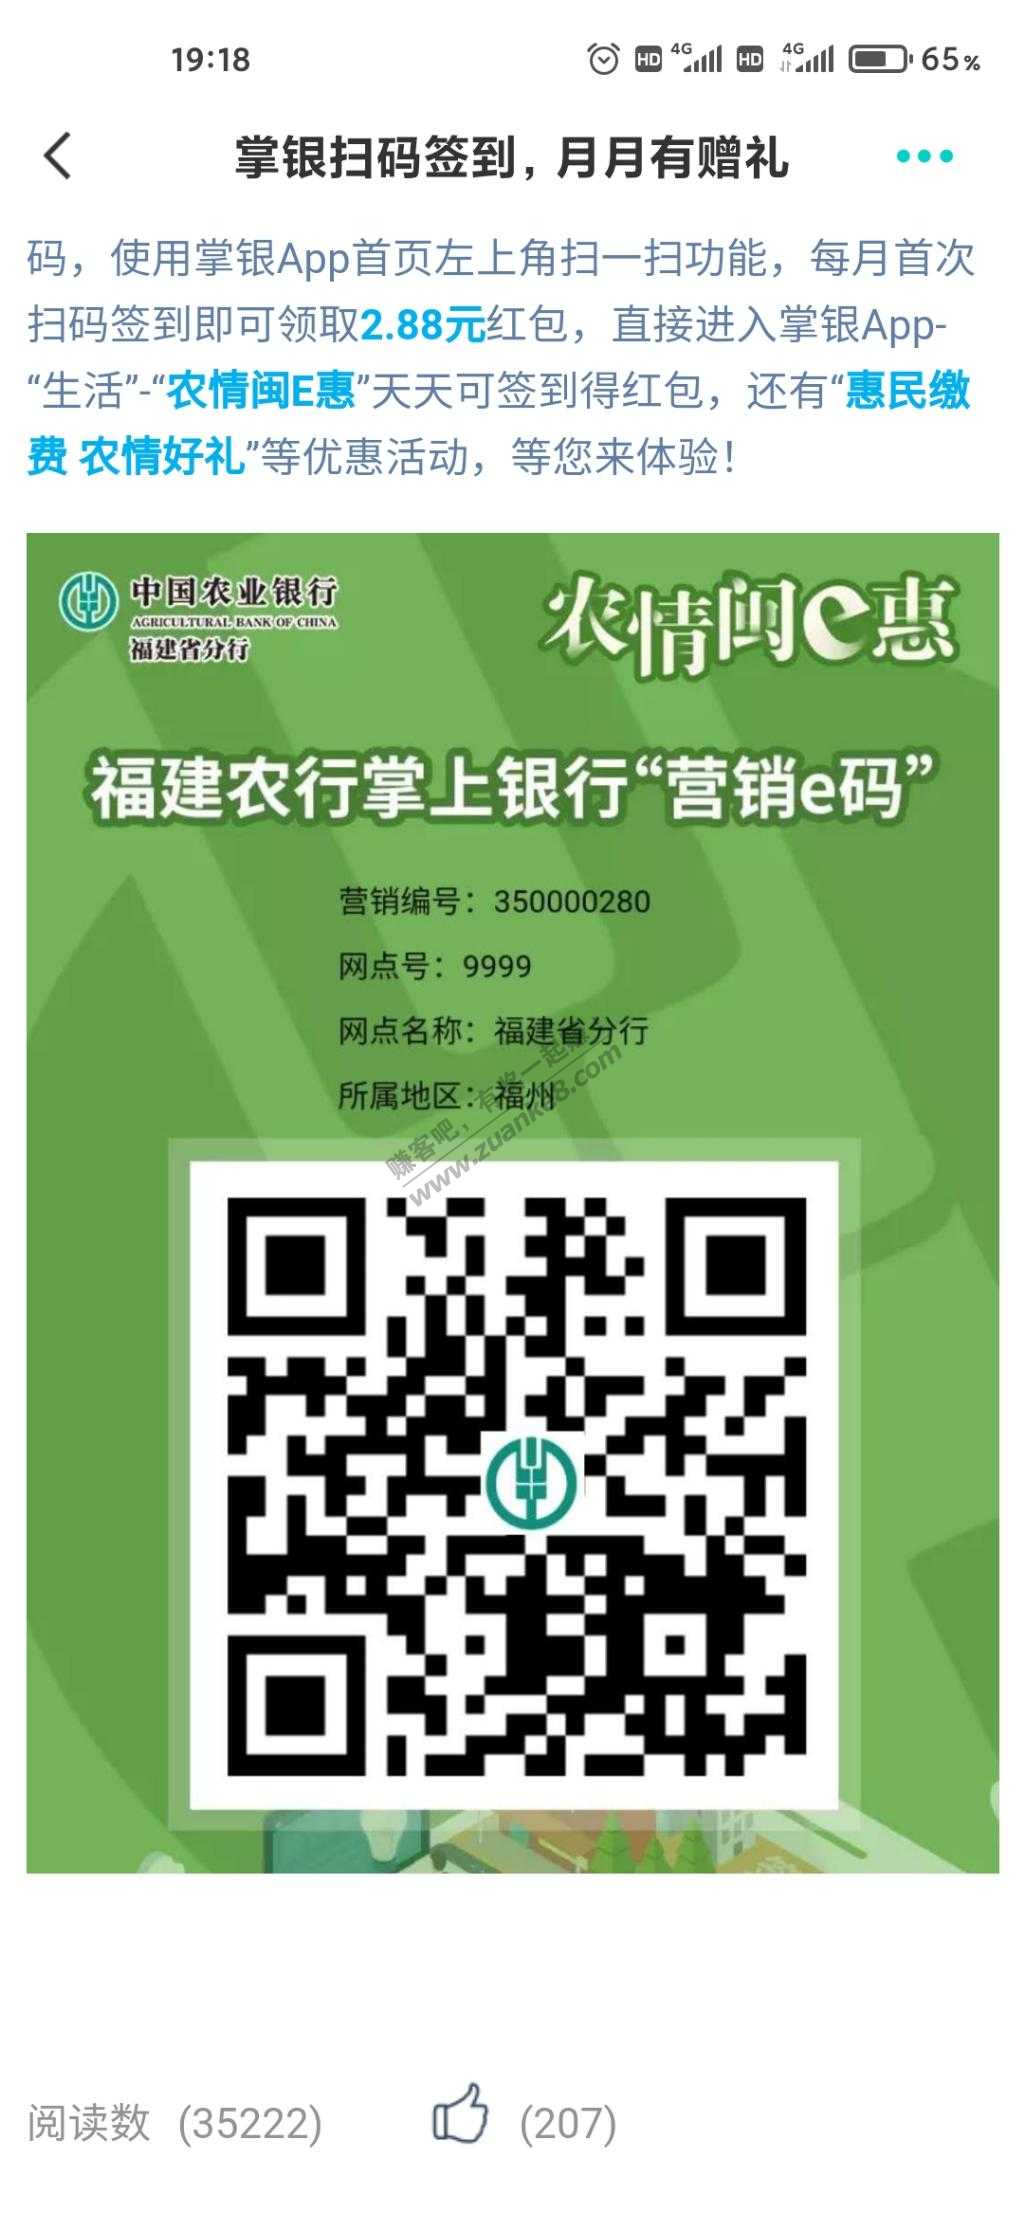 福建农行本月首次扫码签到送2.88-惠小助(52huixz.com)